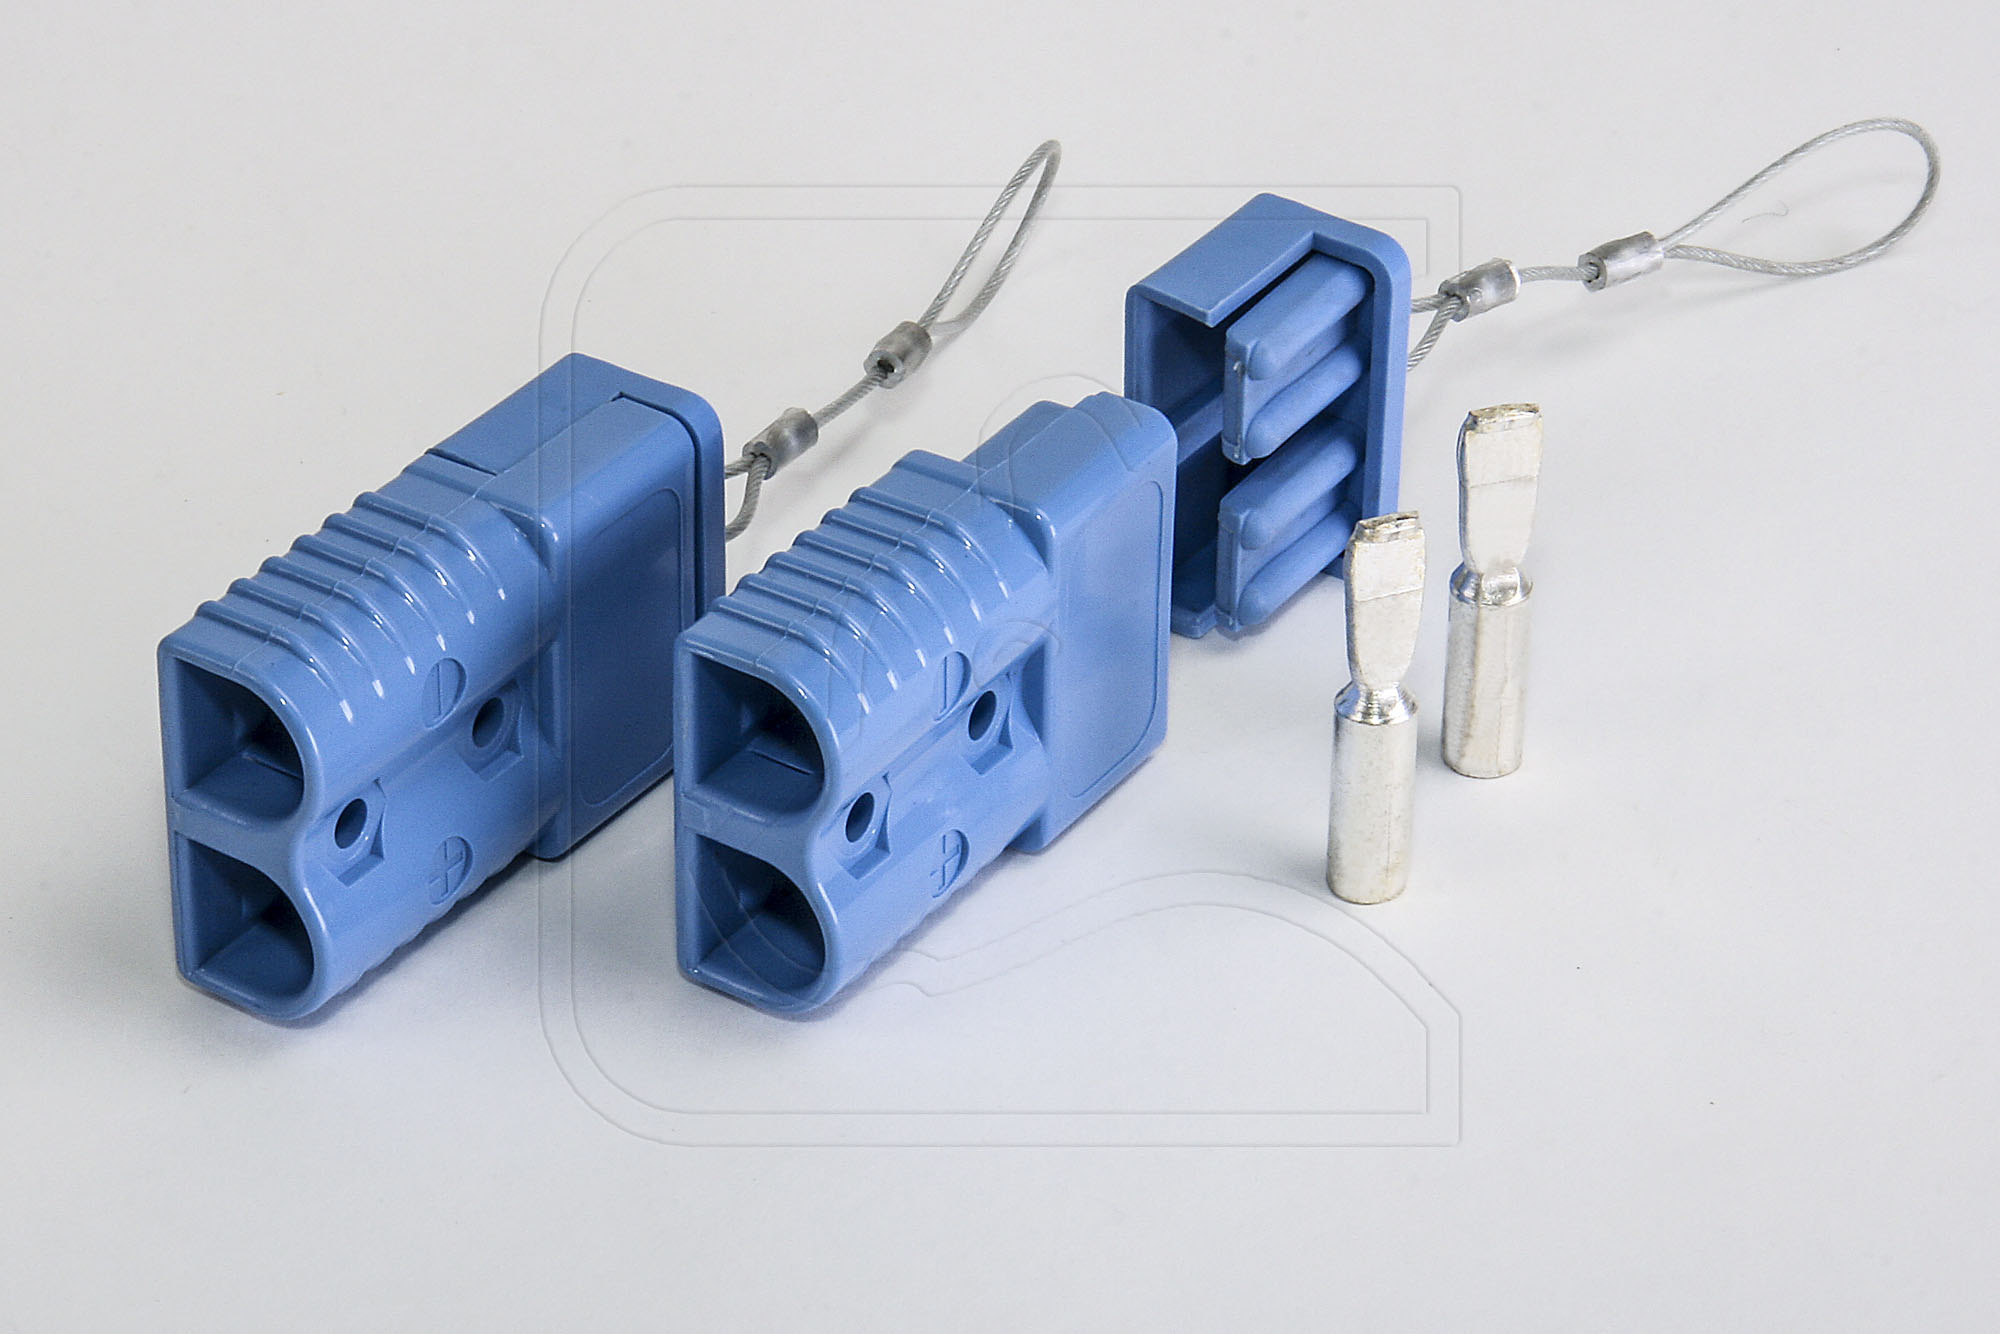 Nakatanenga Doppel-USB Steckdose, 4.2A (2x2.1A) für Armaturenbrett oder  Schalterkonsole